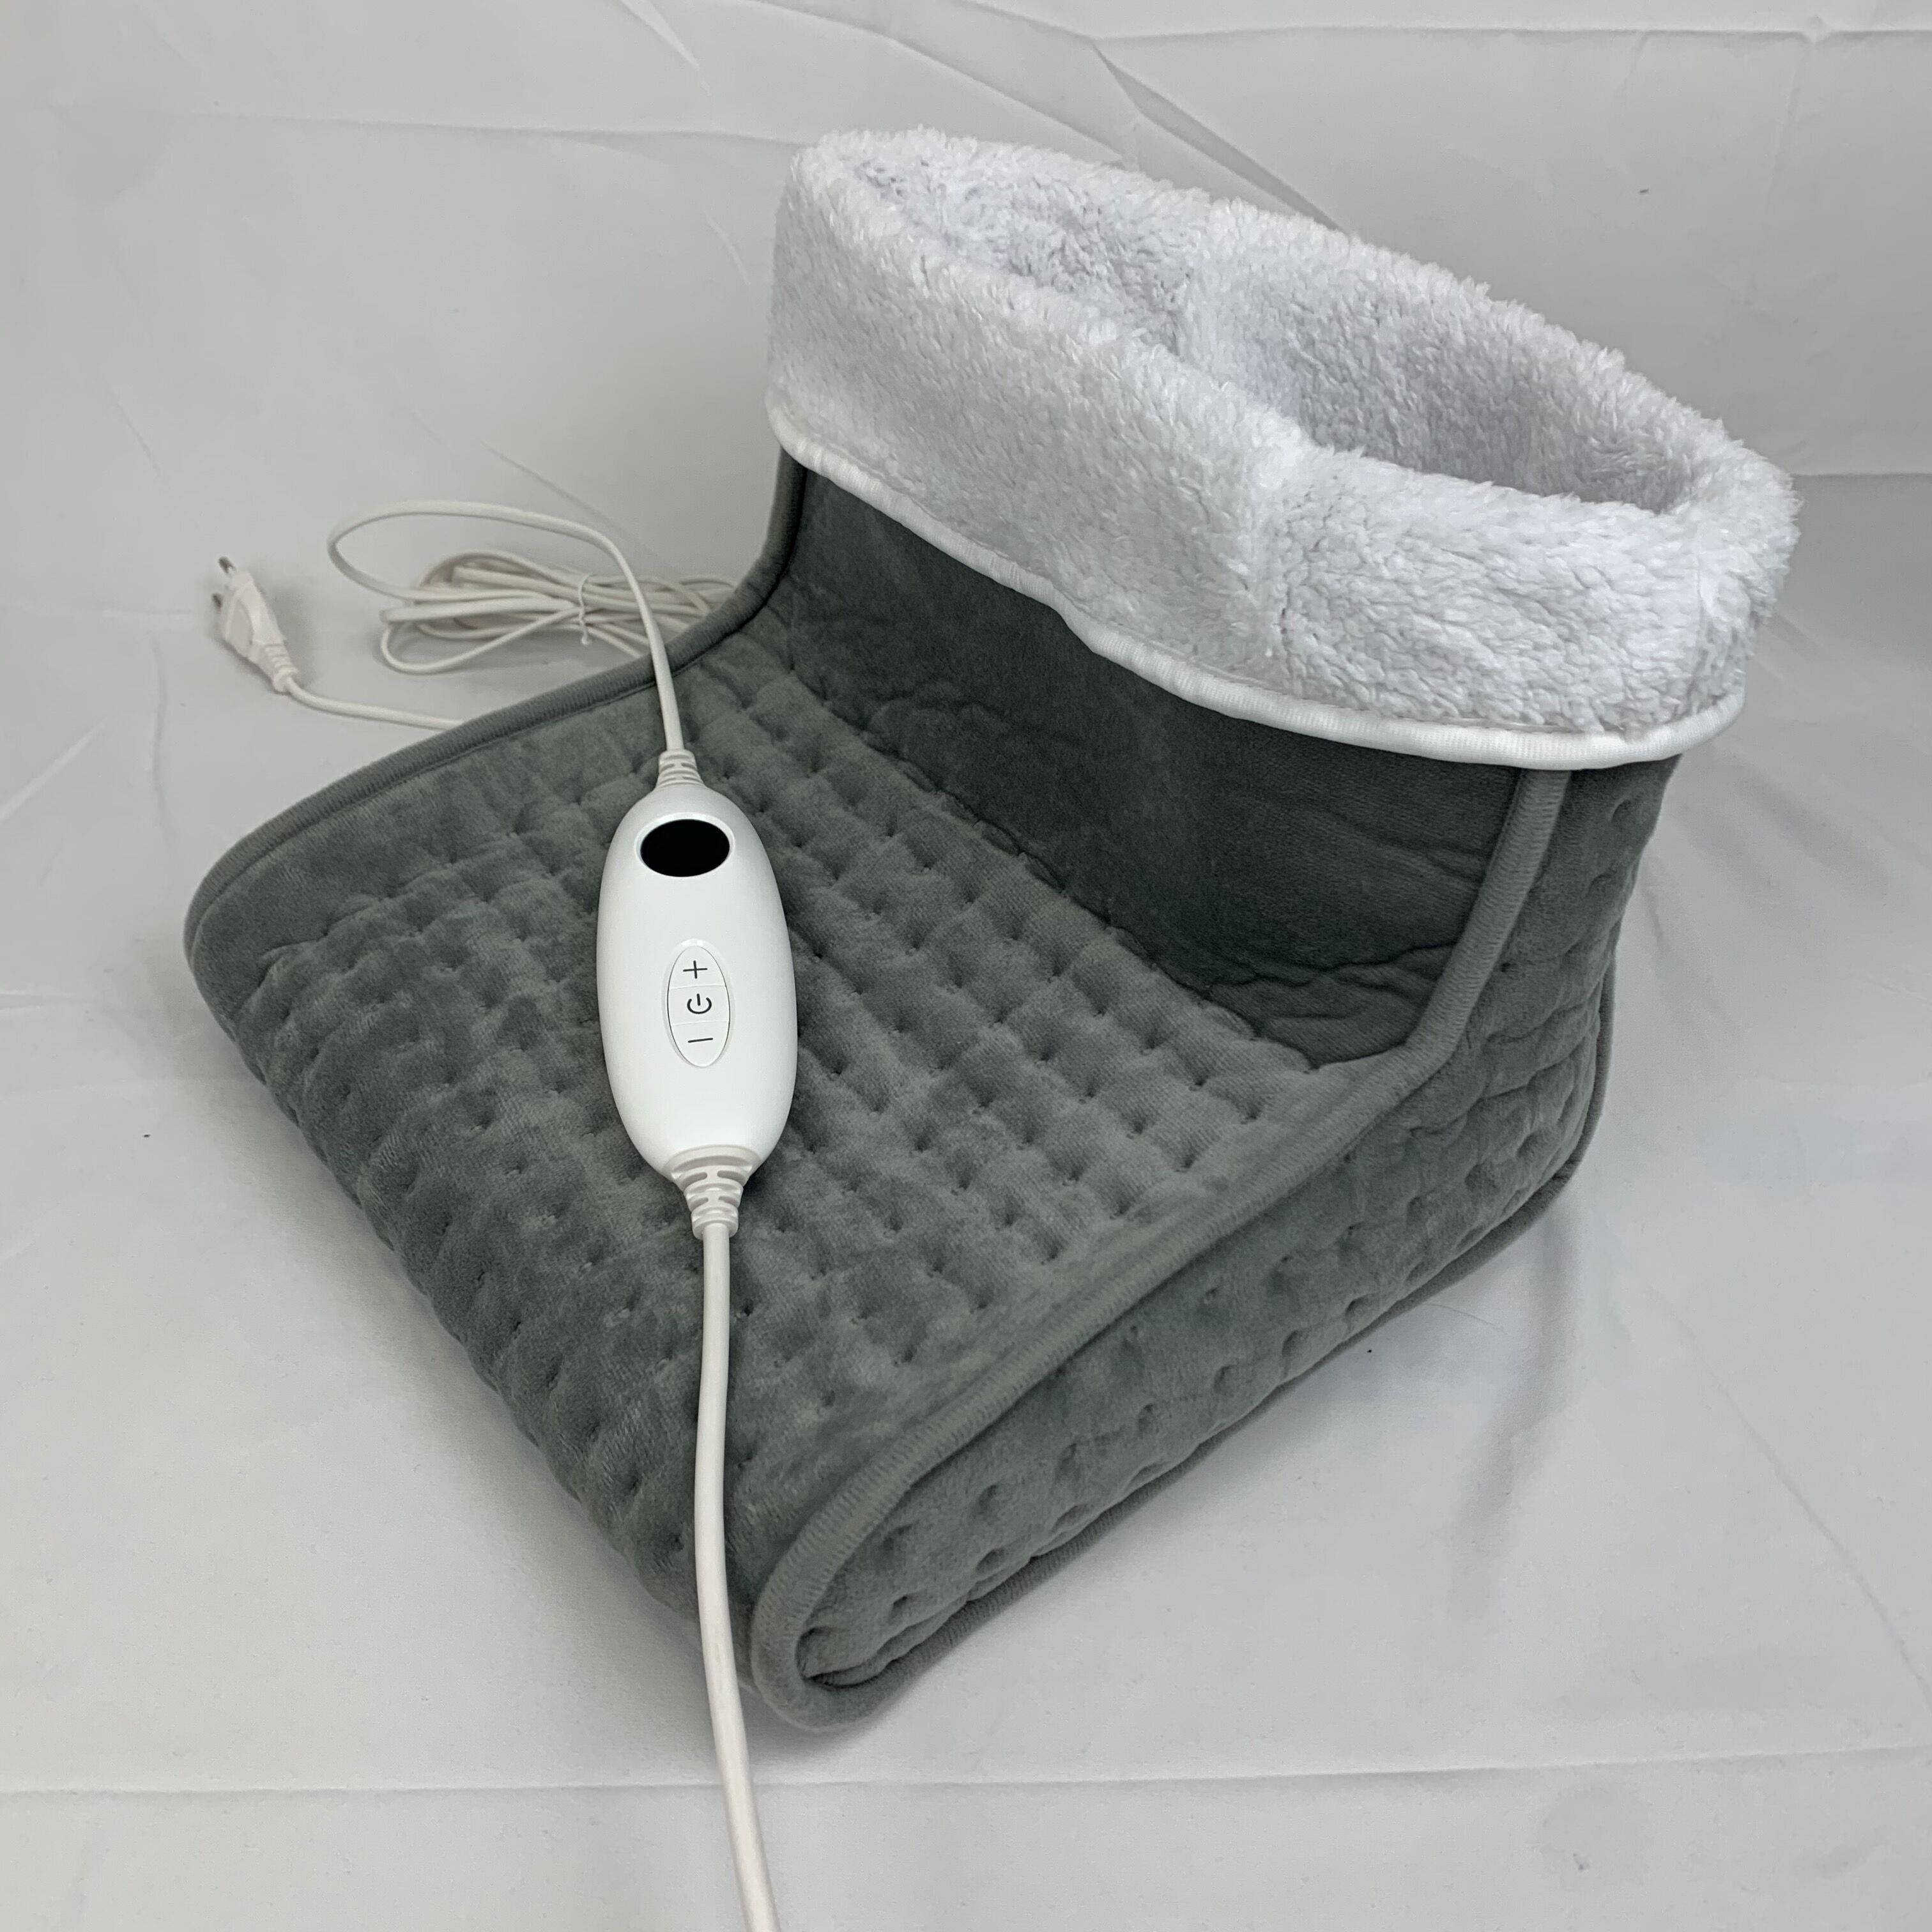 Chauffe-pieds électrique Confortable Pour L'hiver Chaleur Lavable 5